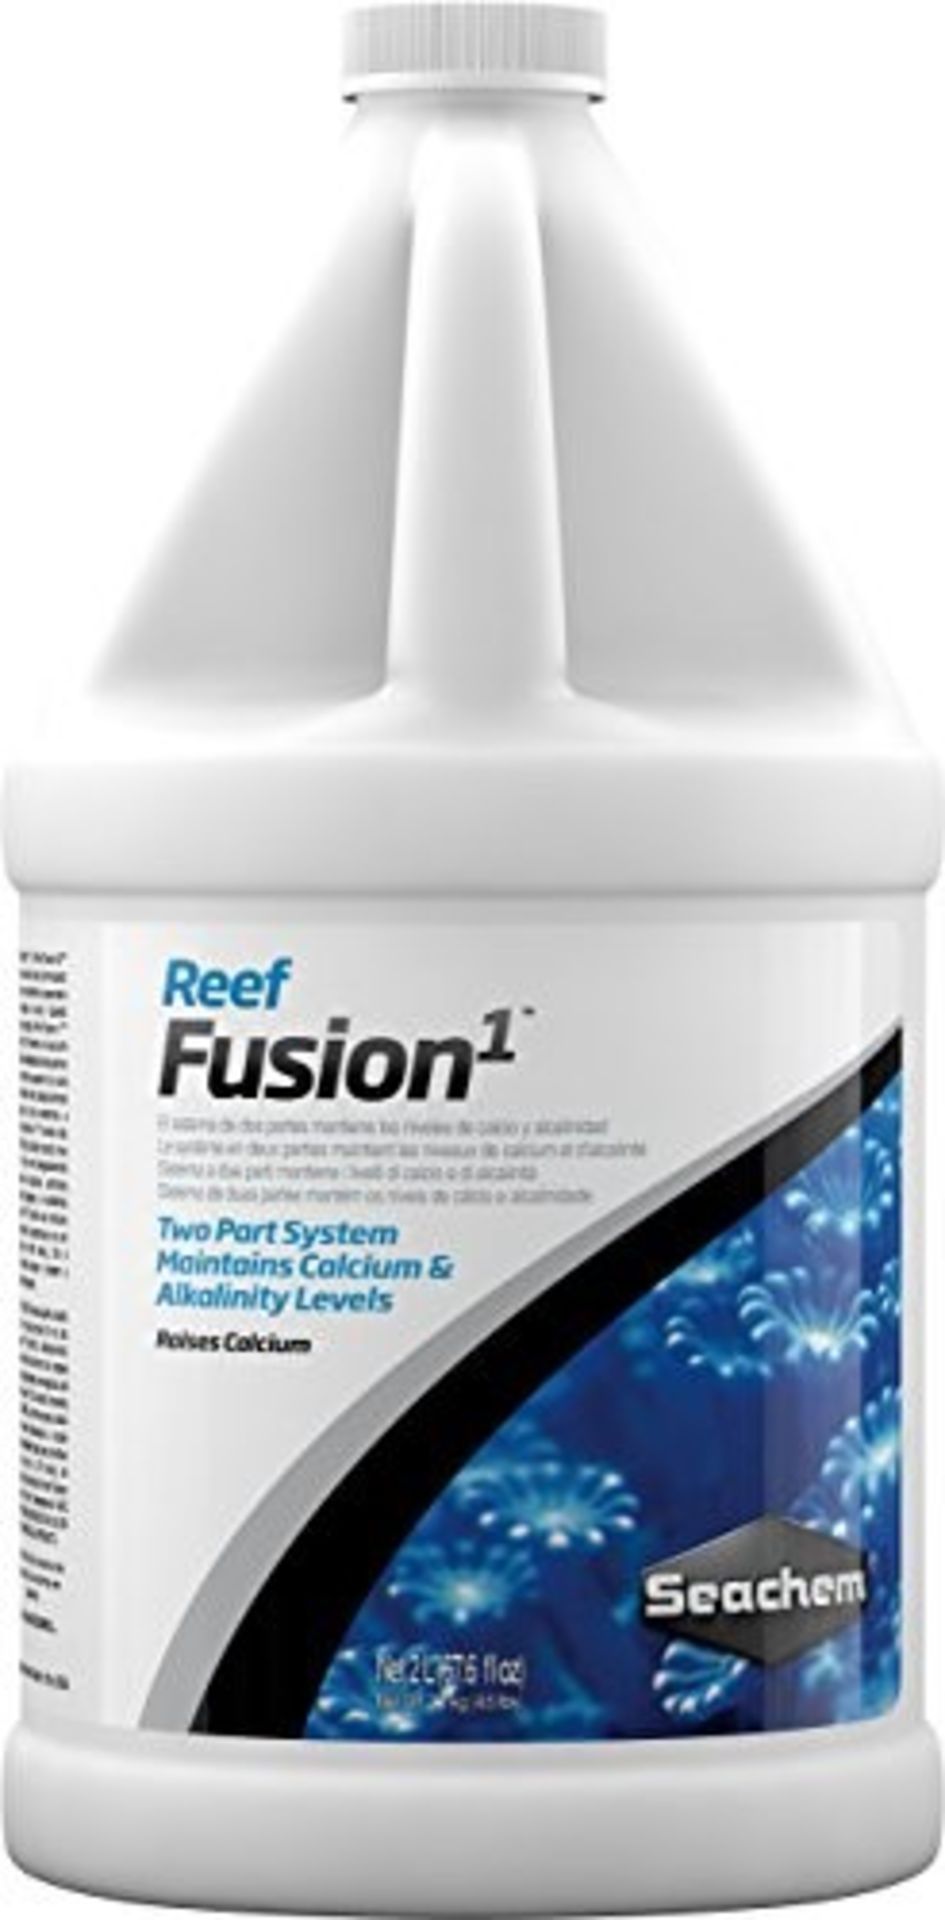 Seachem Reef Fusion 1 of Ionic Calcium, 2 Litre